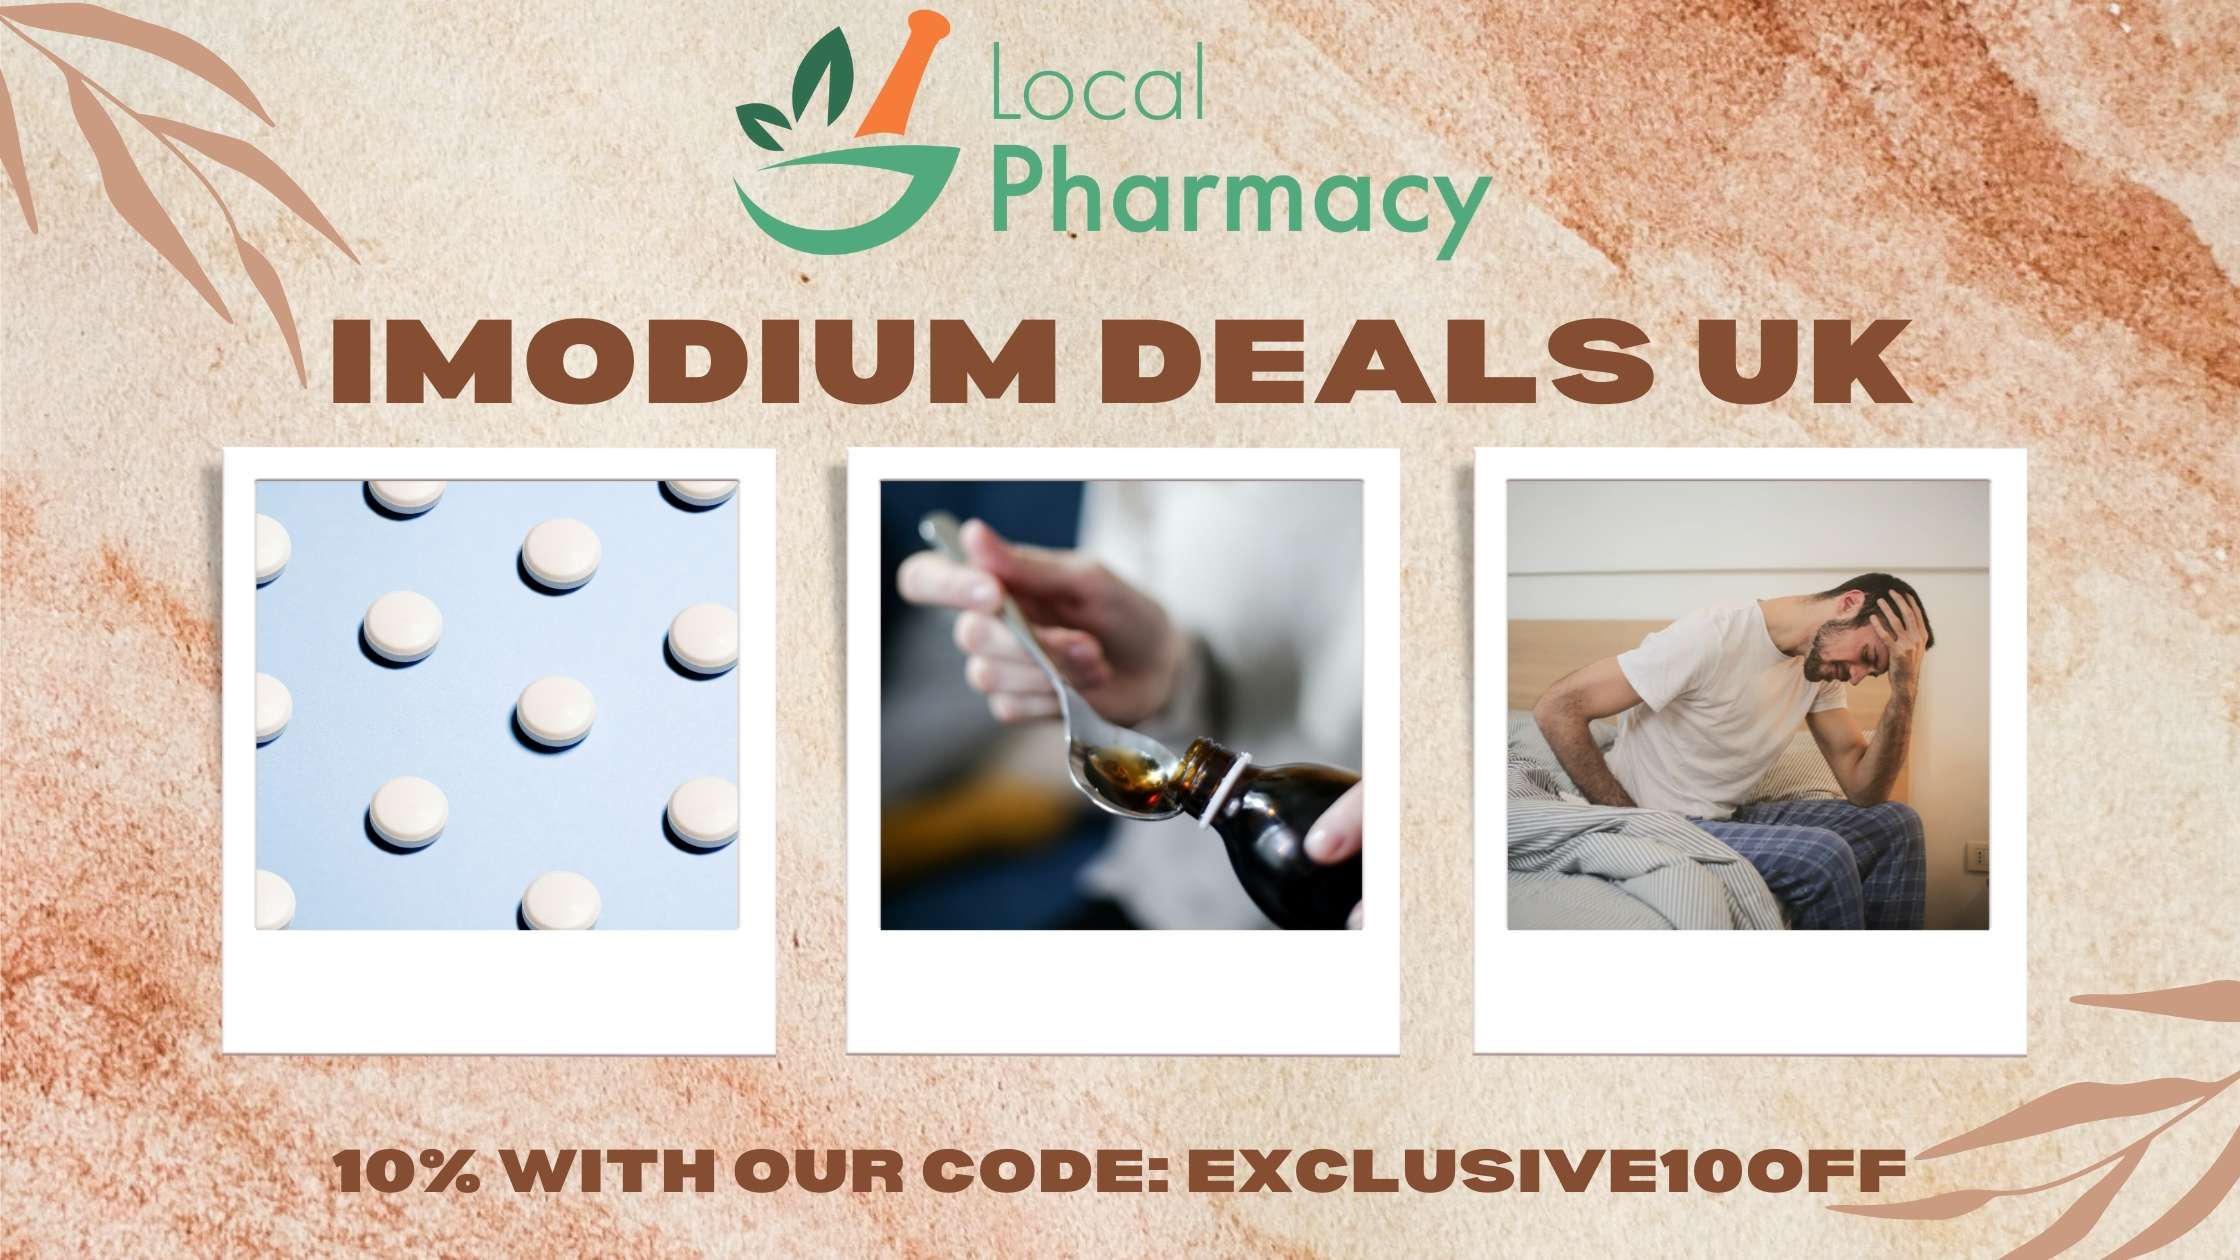 Imodium coupon code and deals uk